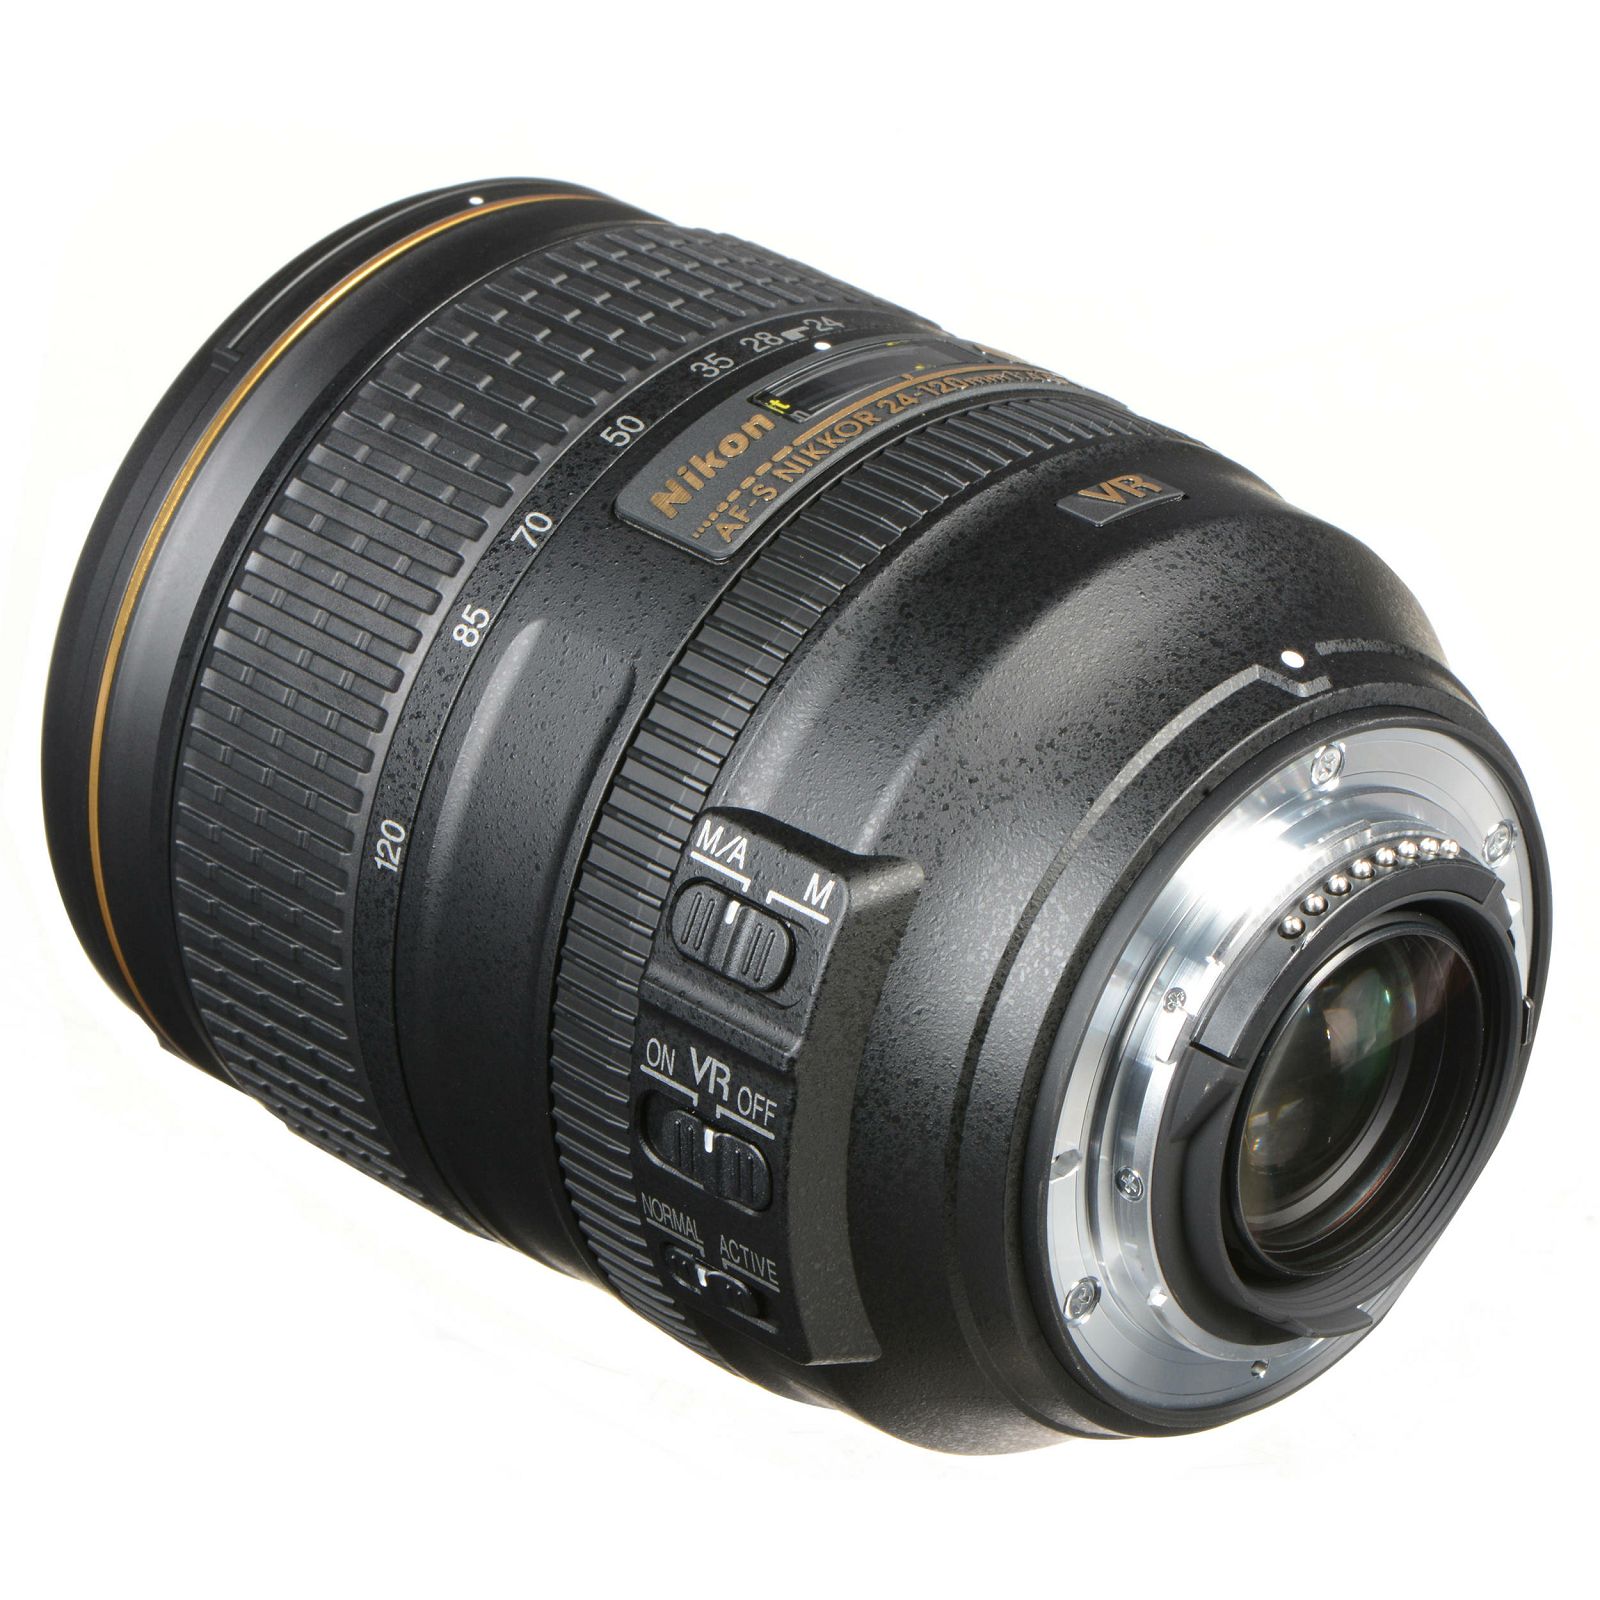 Nikon D850 + AF-S 24-120 f/4G ED VR KIT 4K 9fps 45.7MPpx FX Full Frame DSLR Digitalni fotoaparat s Nikkor 24-120mm objektivom (VBA520K001)